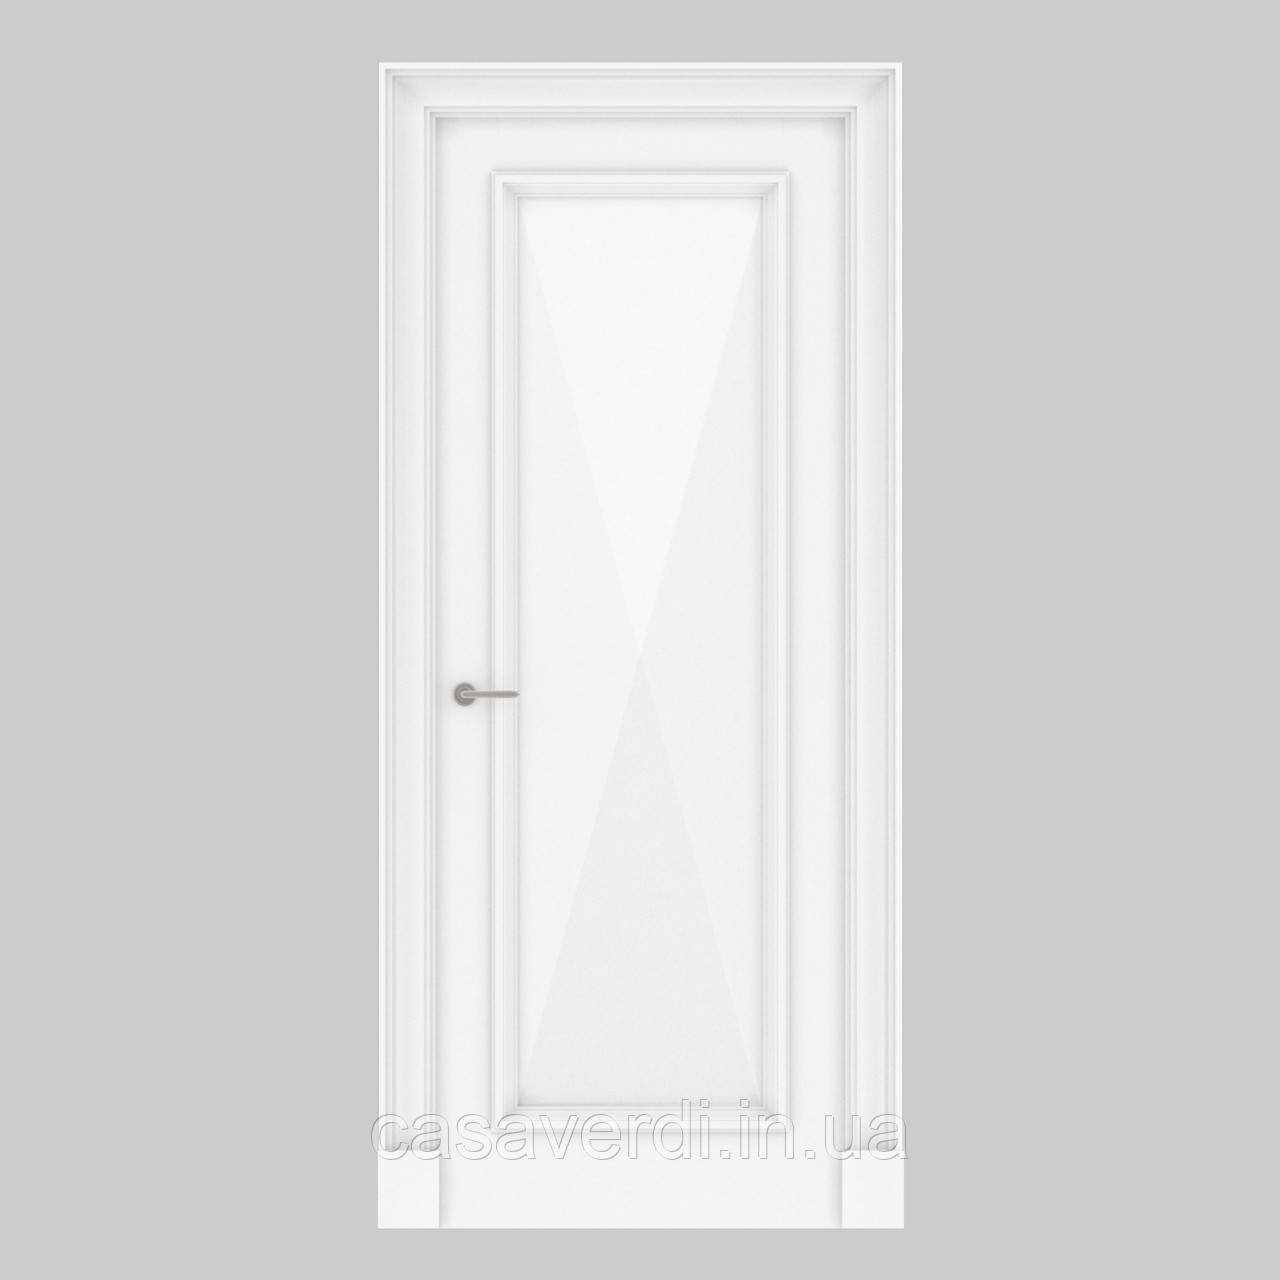 Міжкімнатні двері Casa Verdi Rombo 4 з масиву вільхи біла